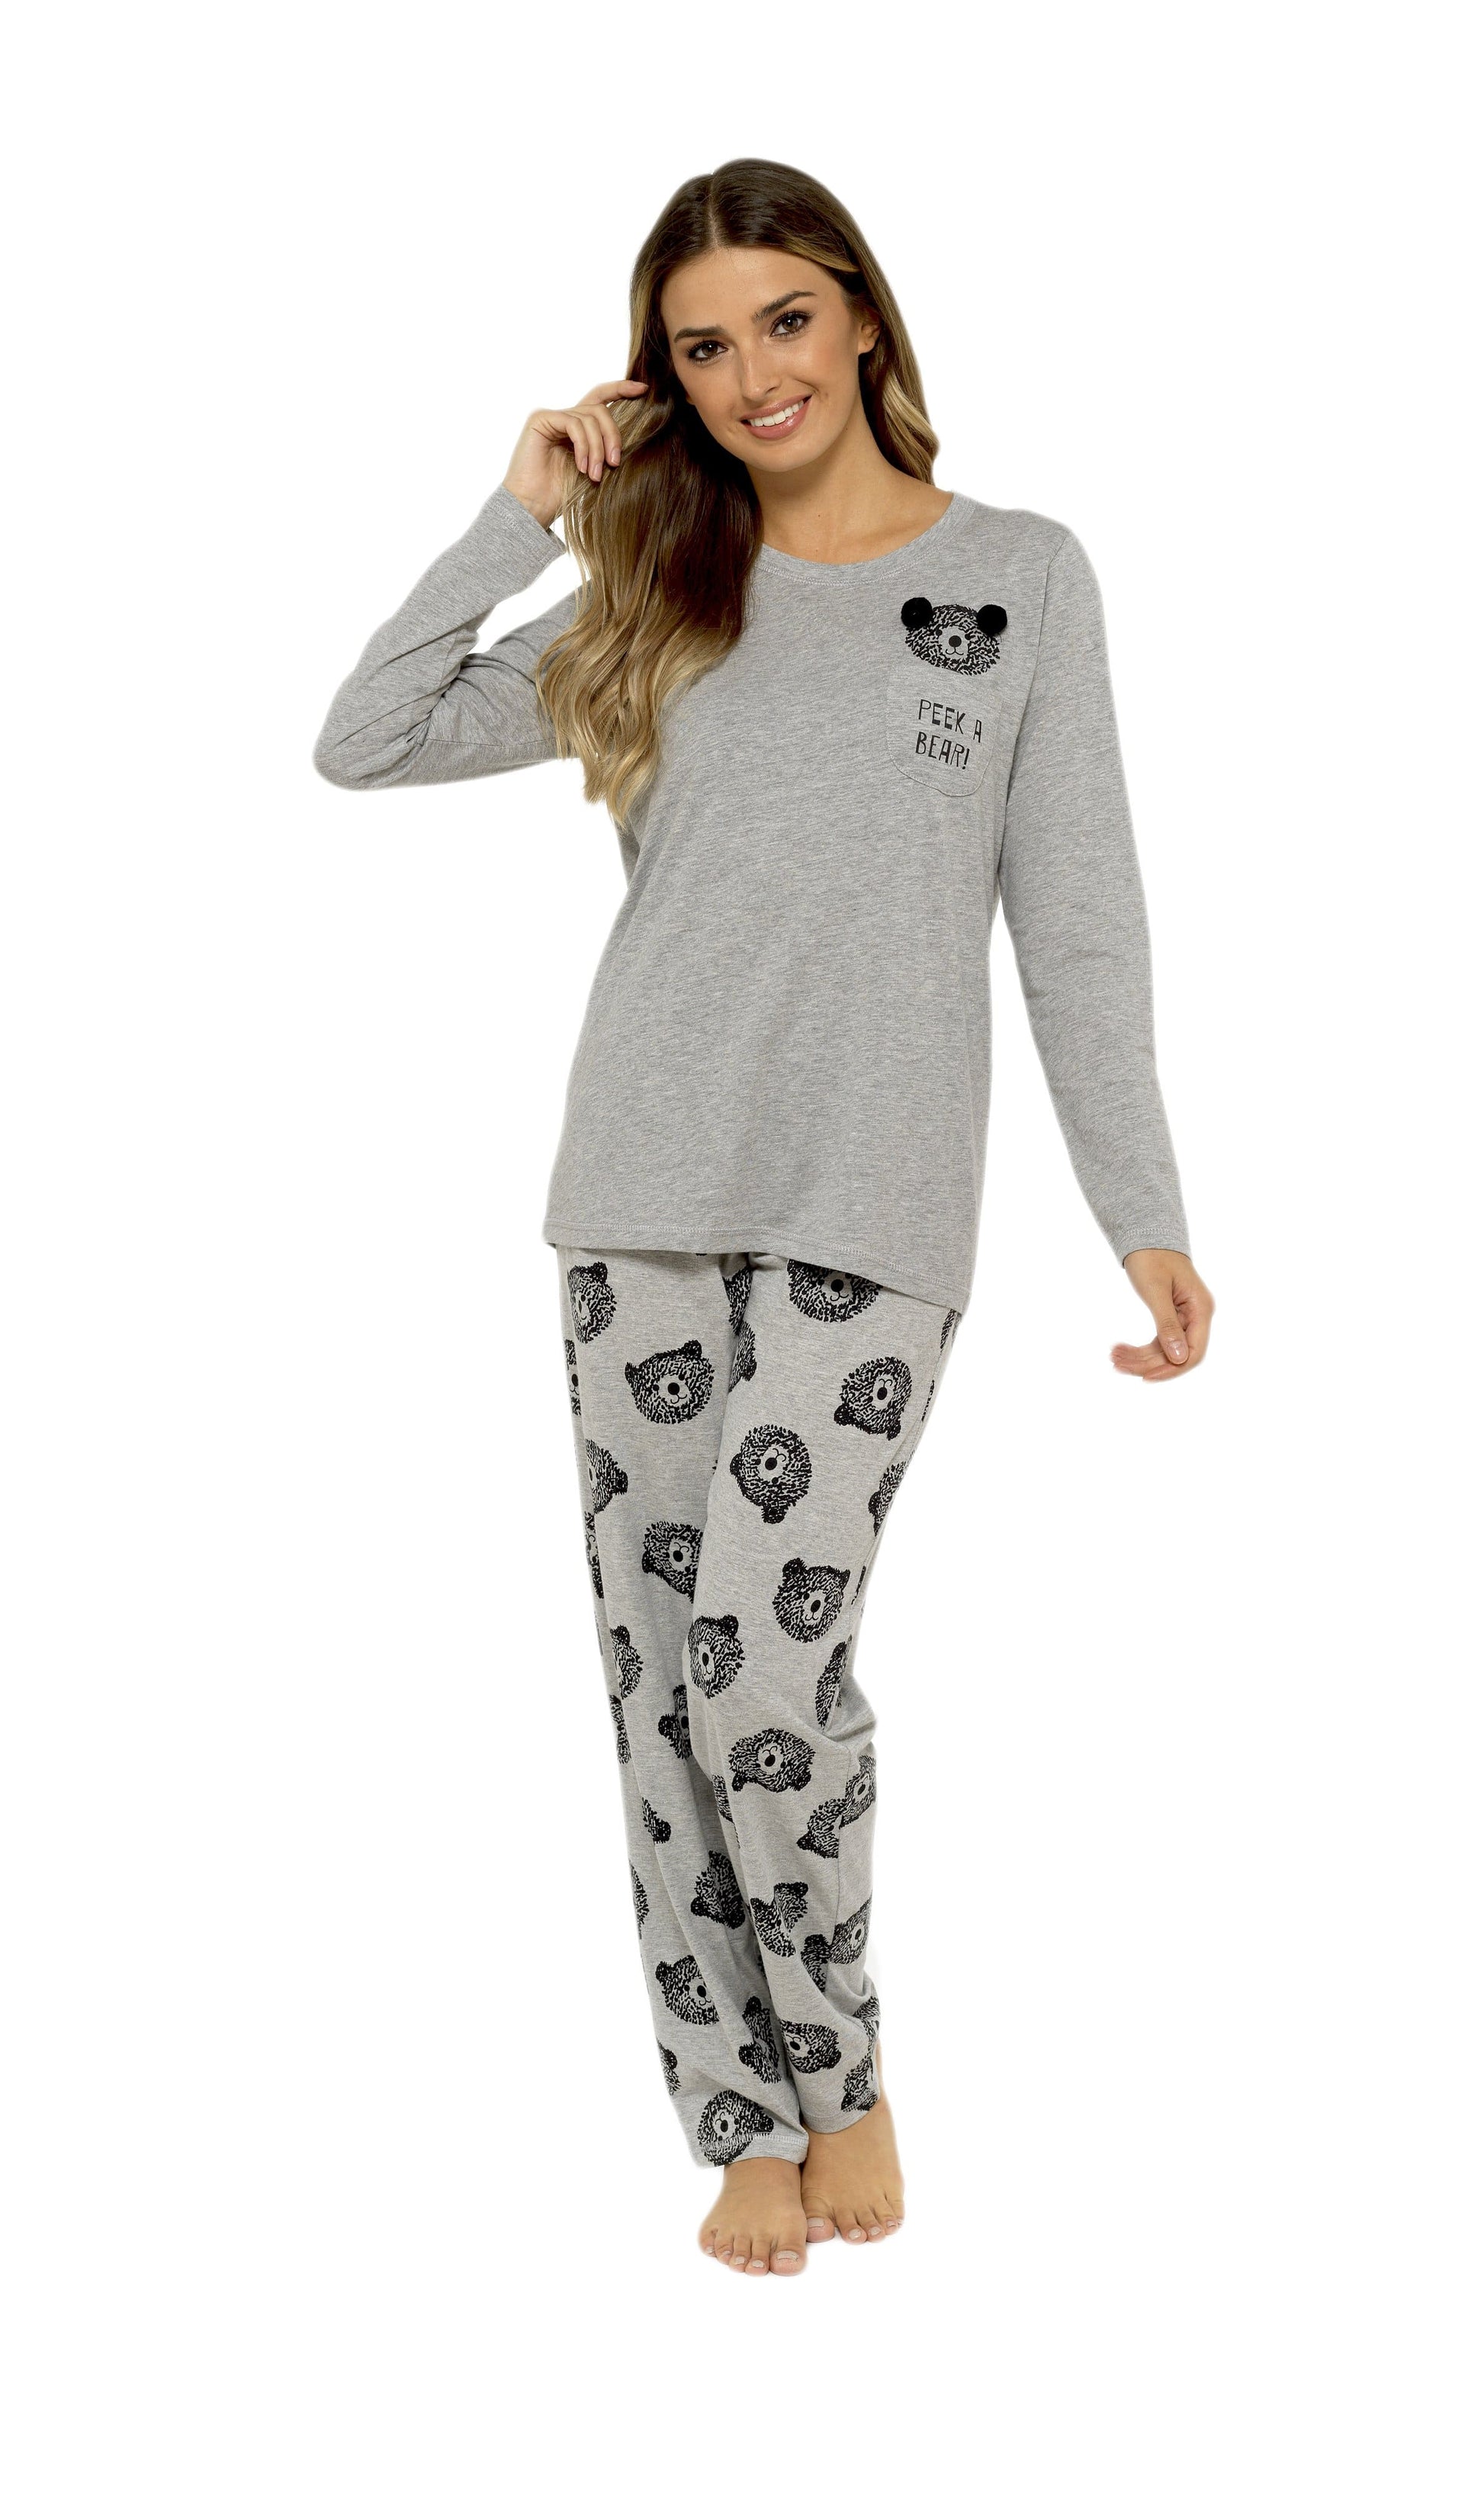 Teddy Bear Grey Cotton Pyjama Set With Pom Pom Detailing Daisy Dreamer Pyjamas